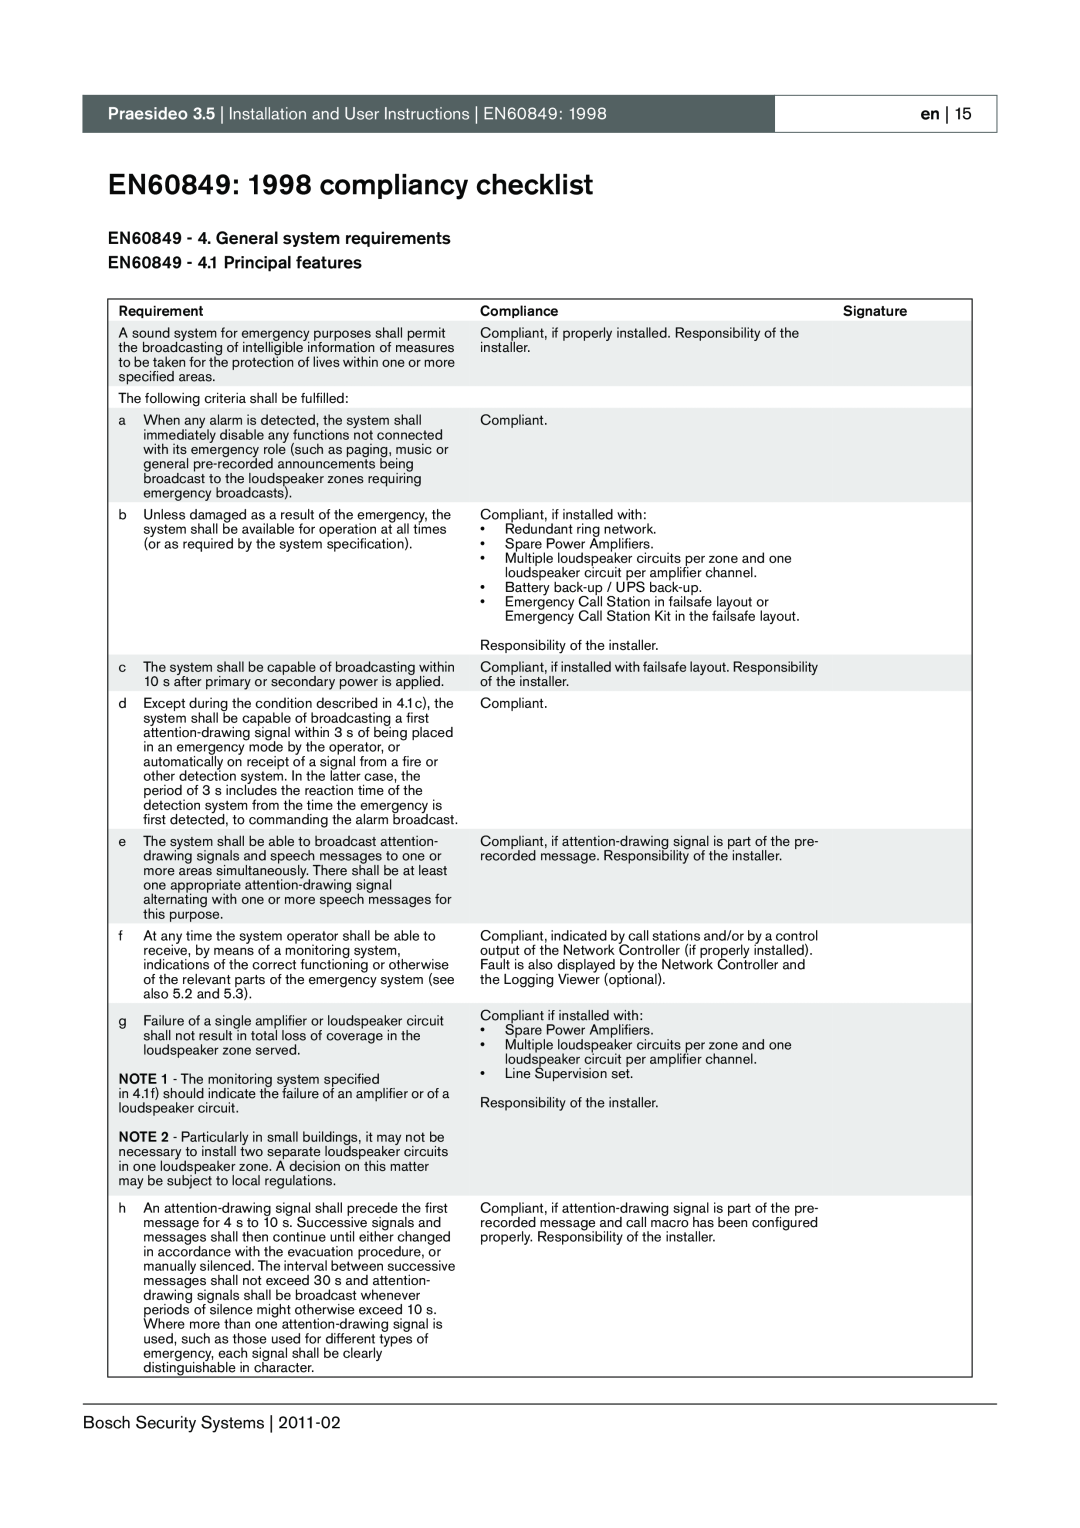 Bosch Appliances 3.5 manual EN60849 1998 compliancy checklist, EN60849 - 4. General system requirements 